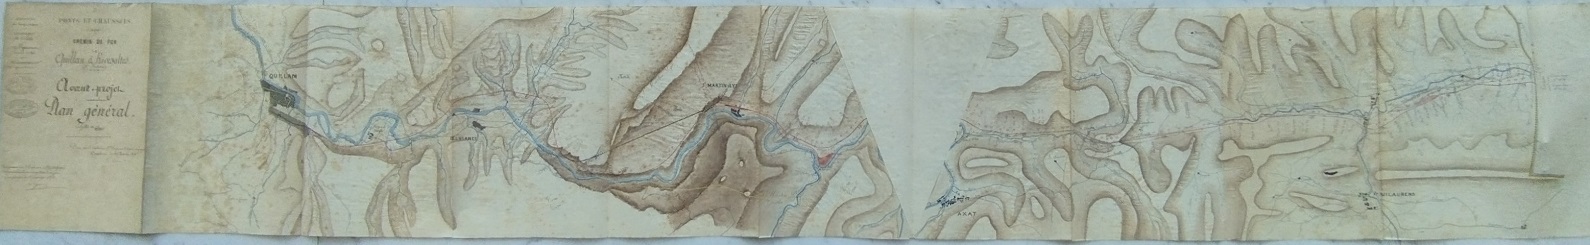 Plan général de l'avant projet de 1878 - vue complète